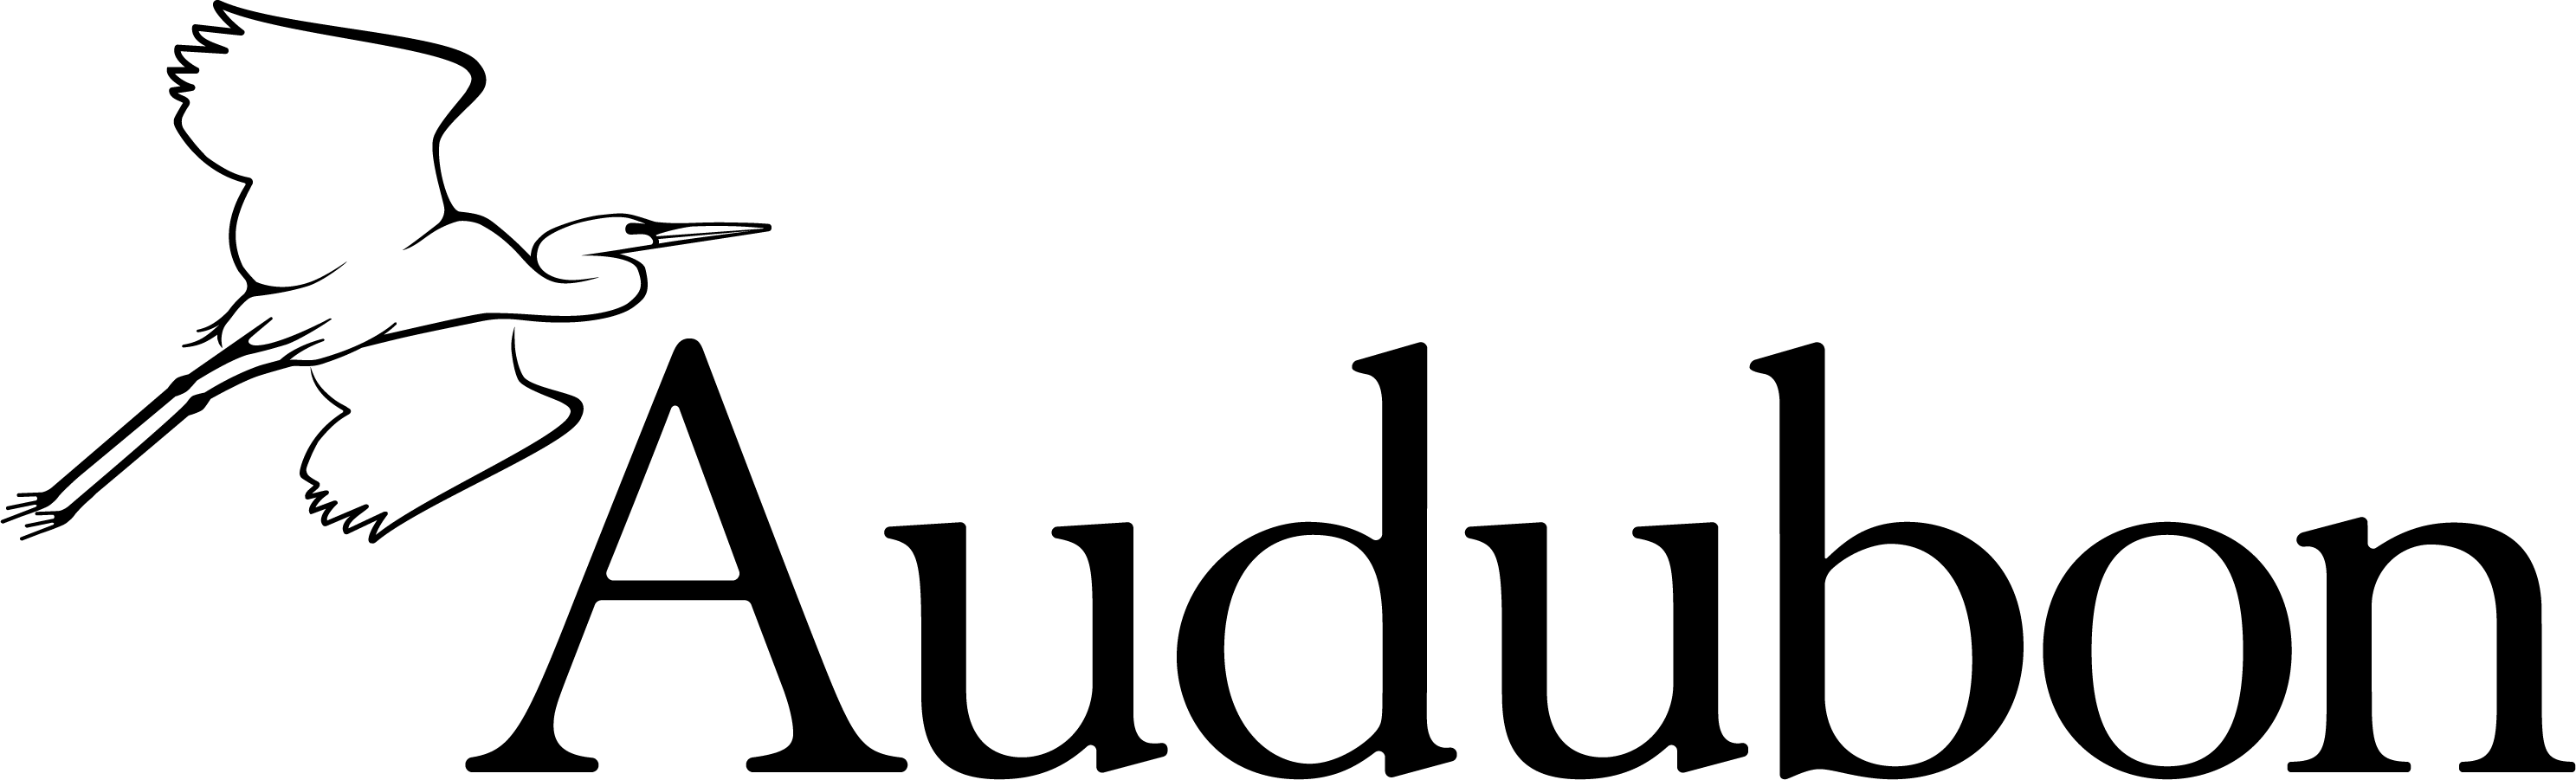 Audubon Logo - National Audubon Society, Inc